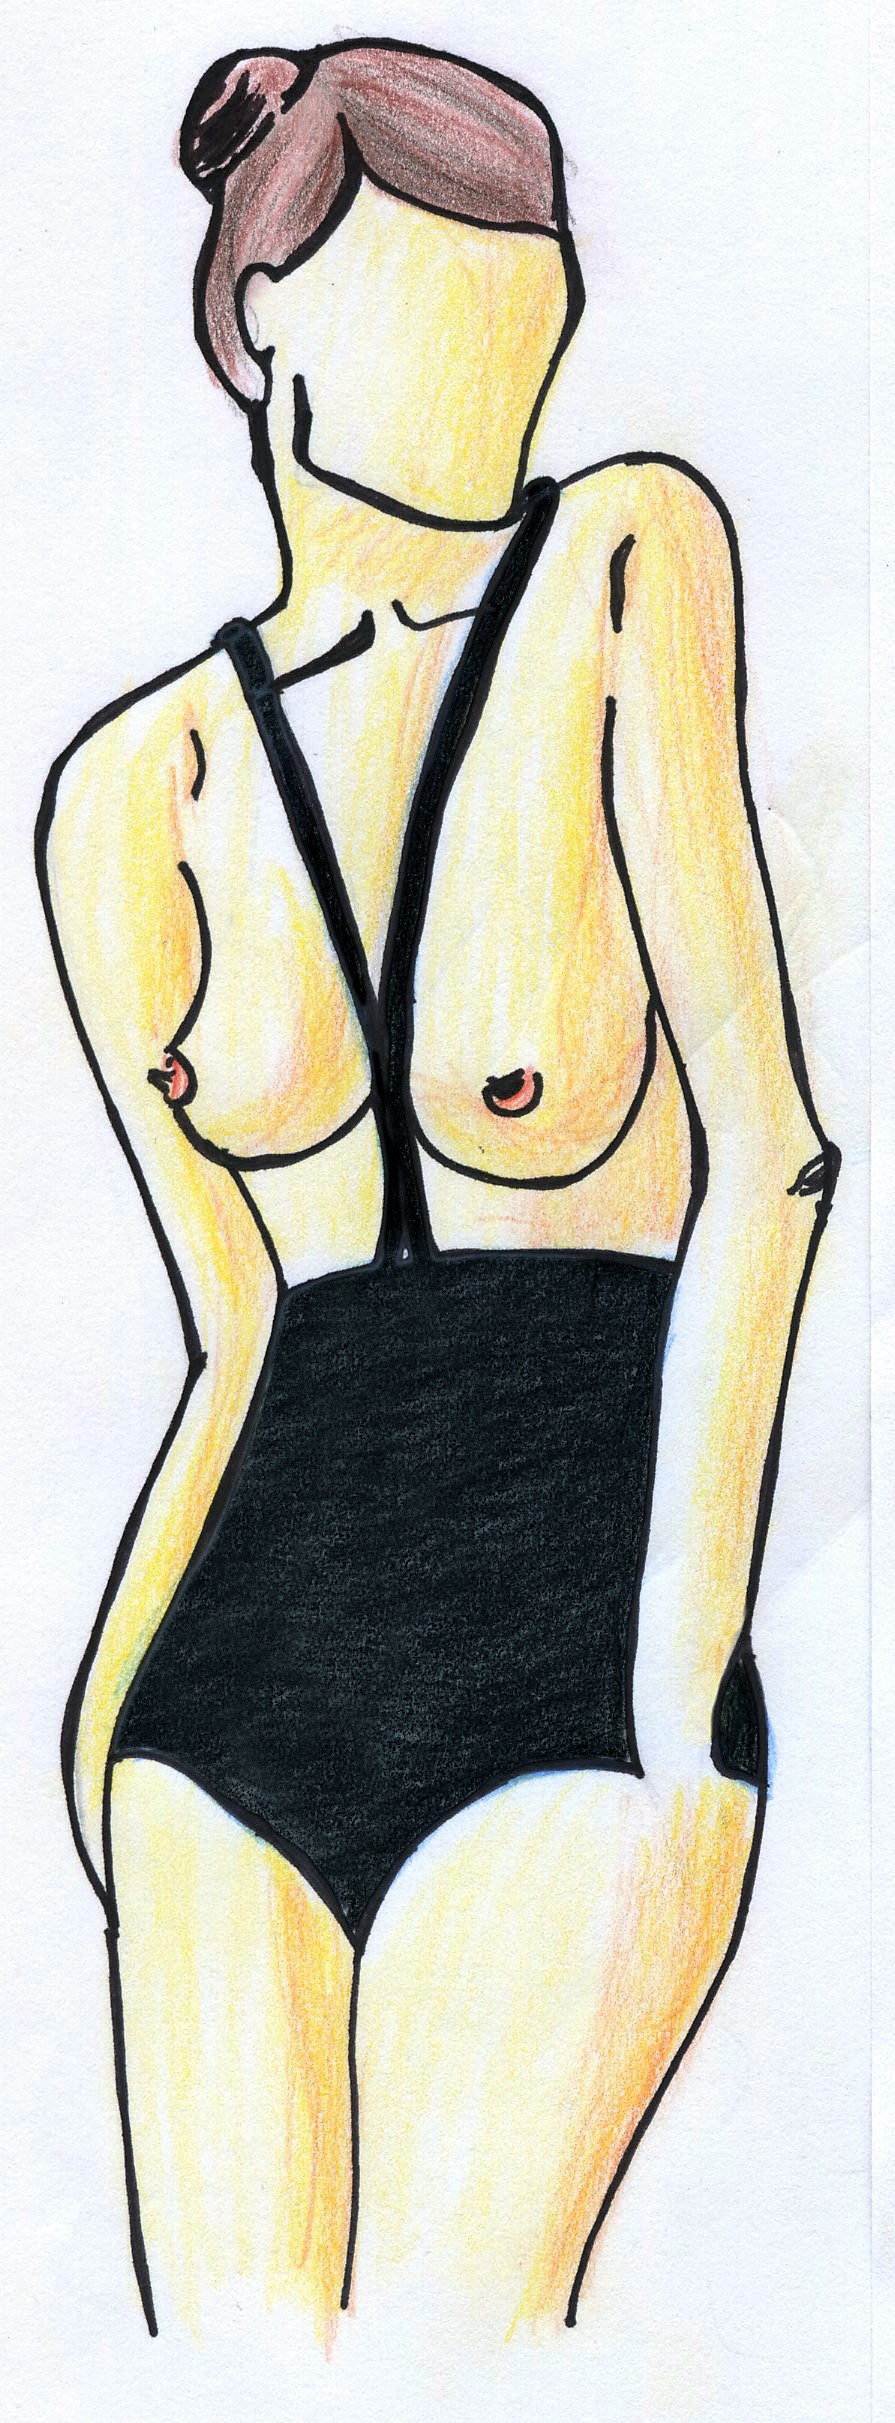 Le monokini, dessin créé par Fee Keller, sous licence creative common.